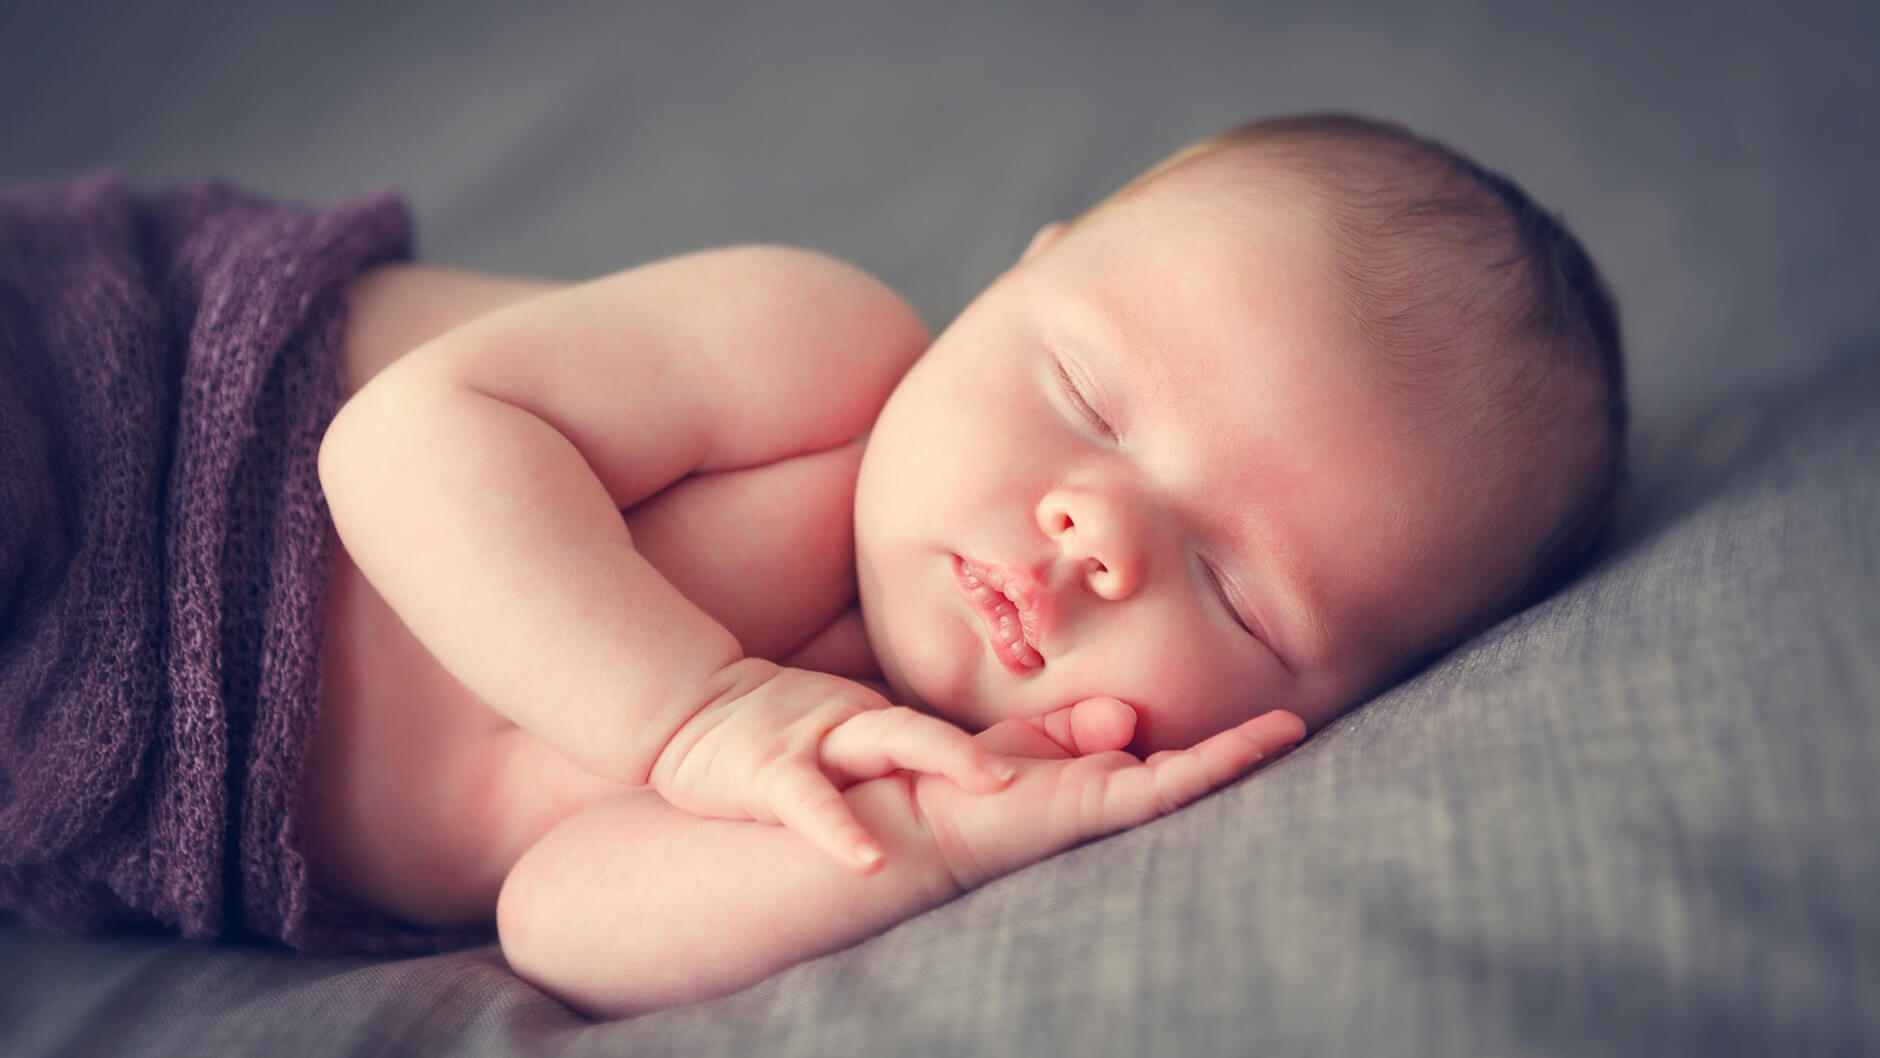 Thời gian ngủ bình thường của trẻ sơ sinh